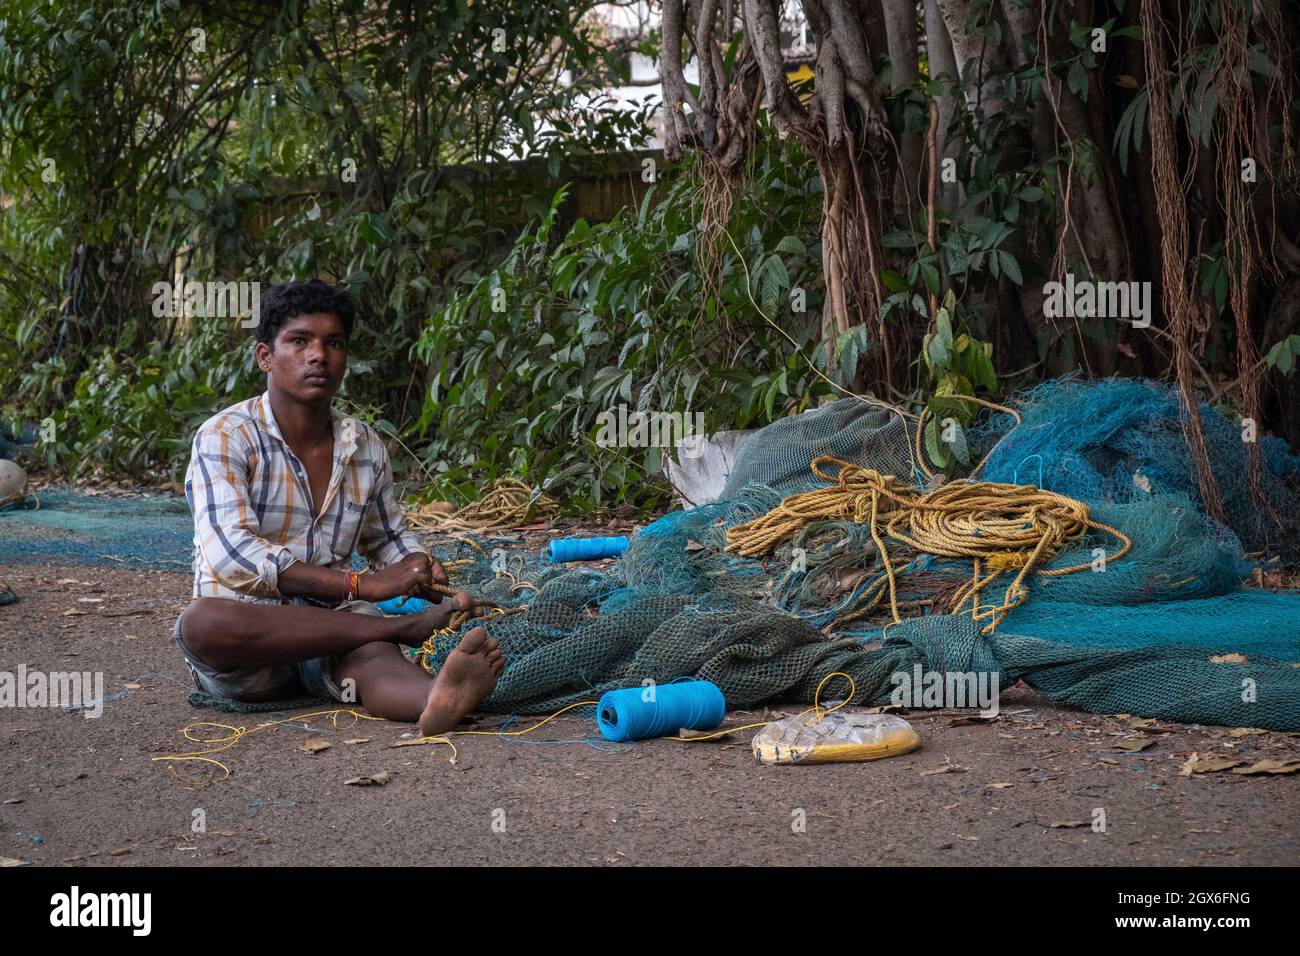 Indian Fisherman repairs fishing net in Goa, India Stock Photo